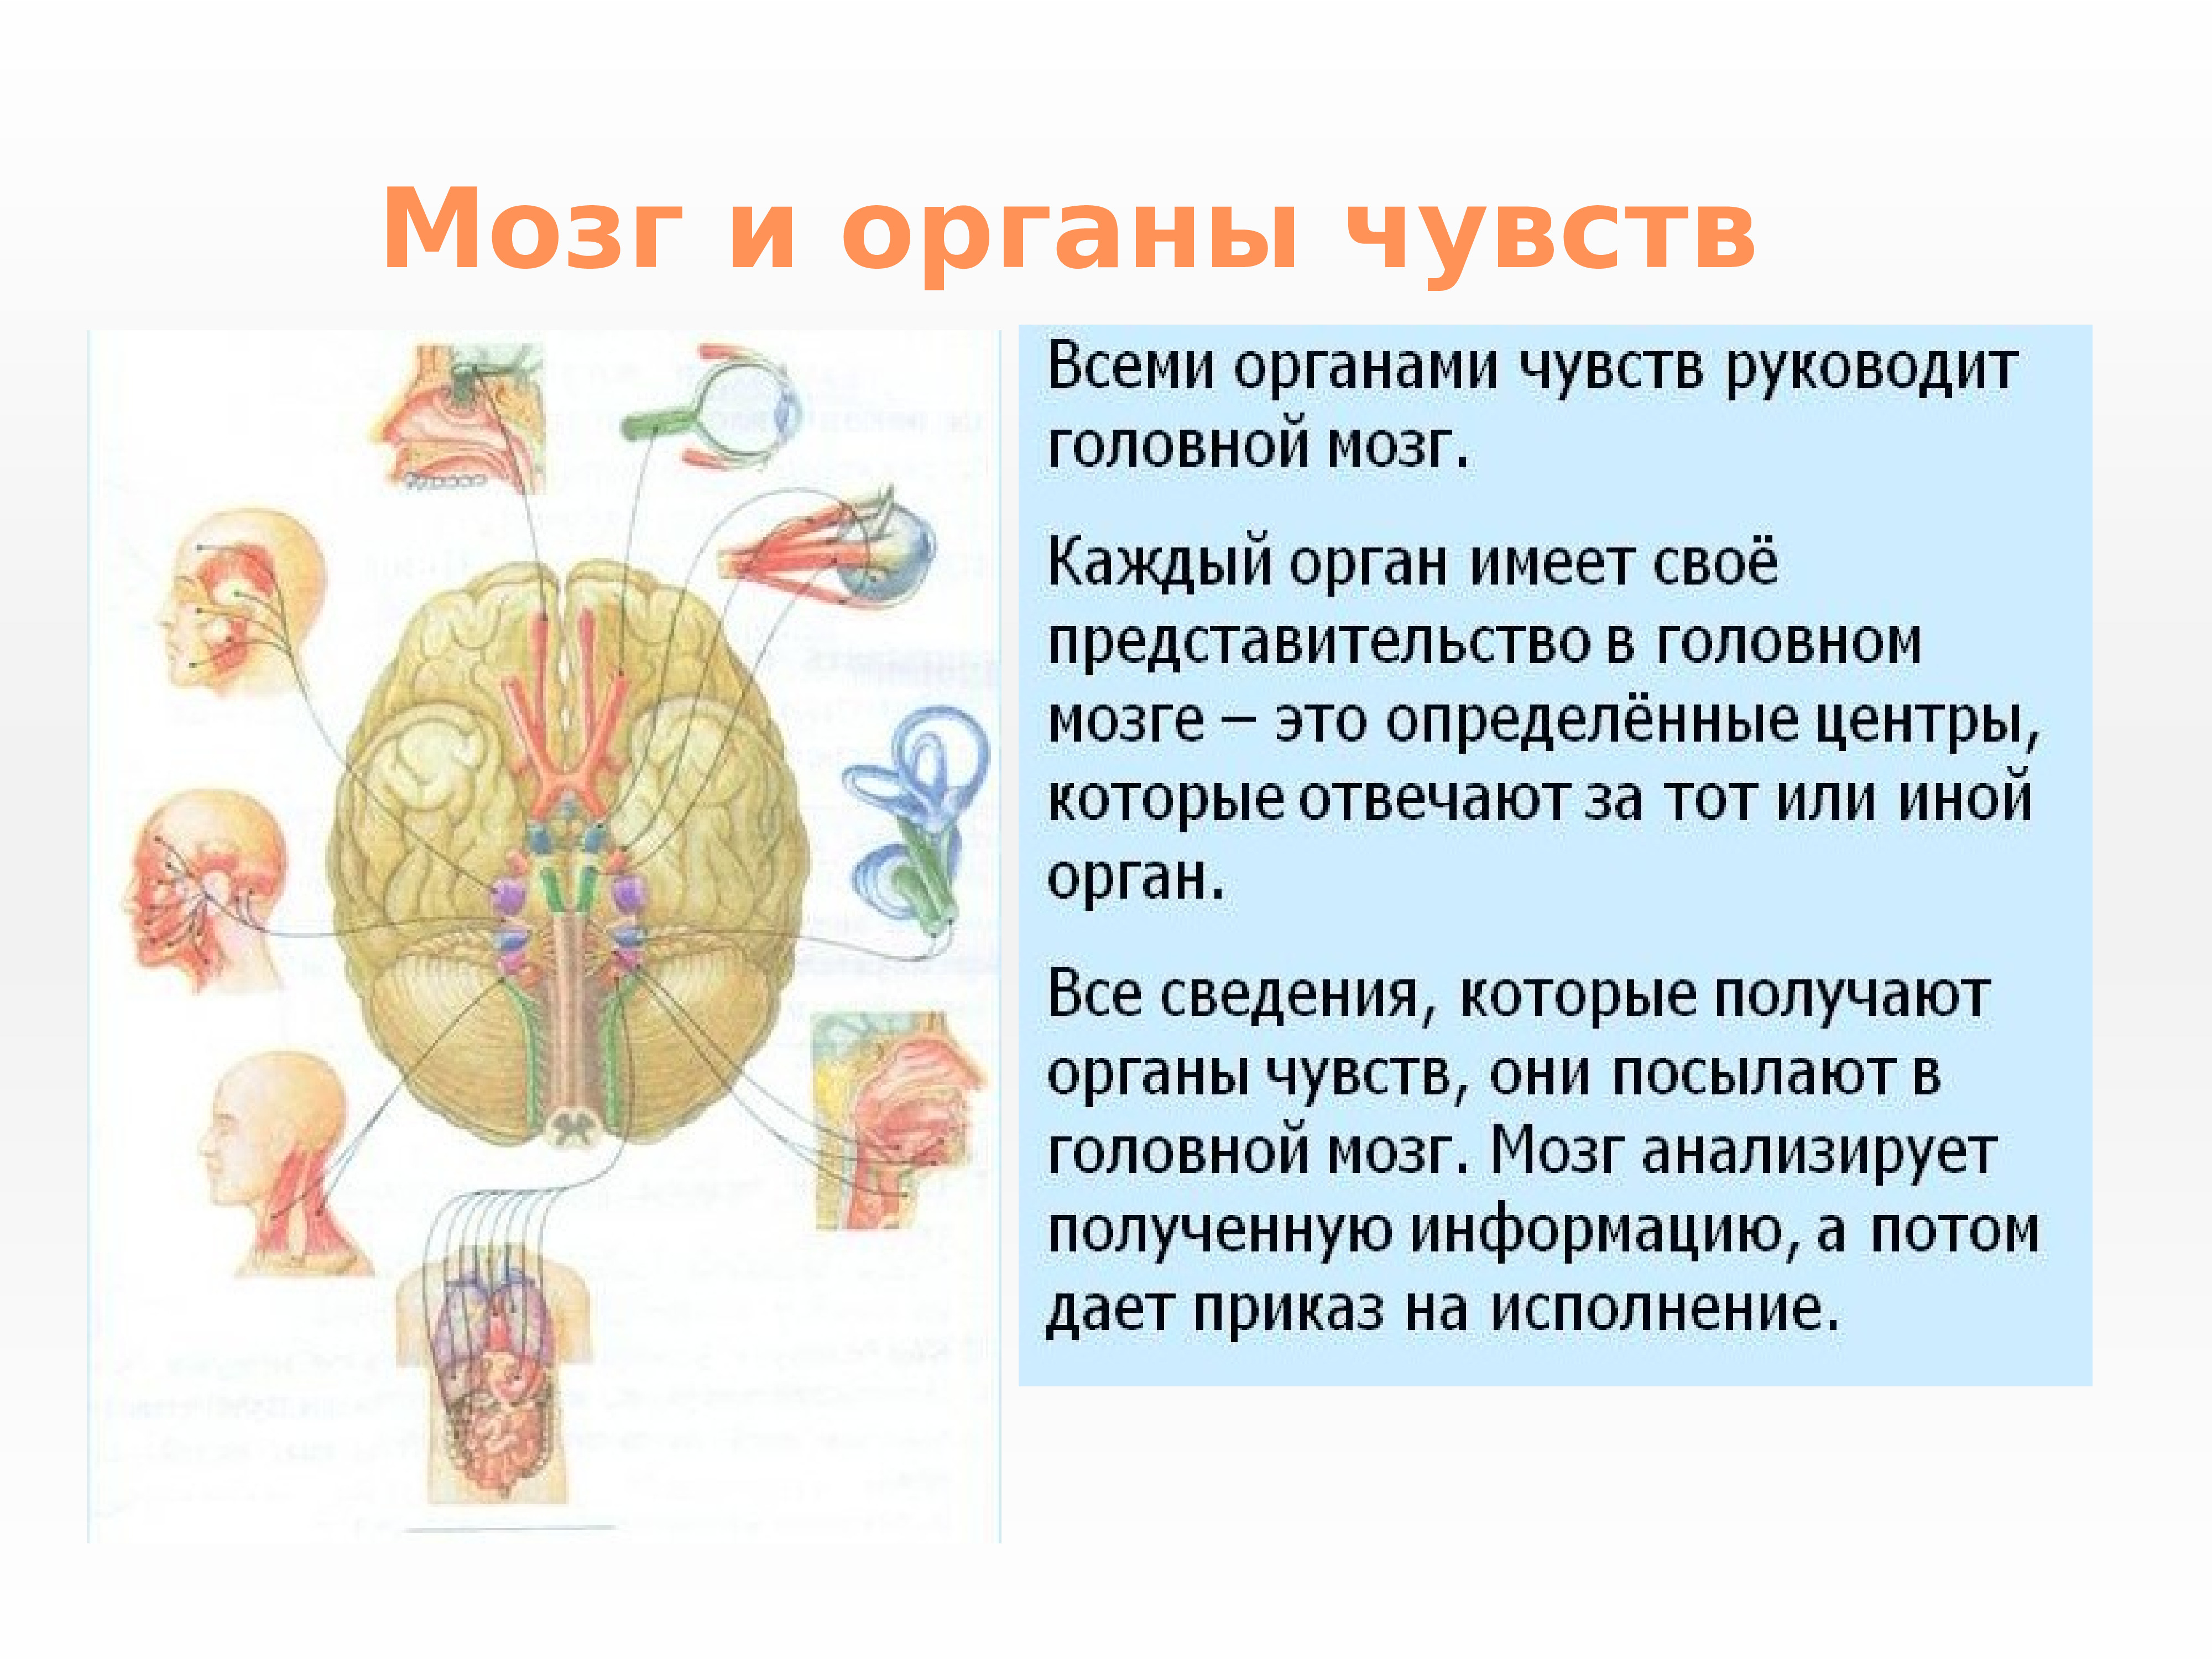 Факты систем органов человека. Нервная система и органы чувств система человека. Нервная система структура организма. Строение и функции органов нервной системы. Нервная система и органы чувств строение функция.